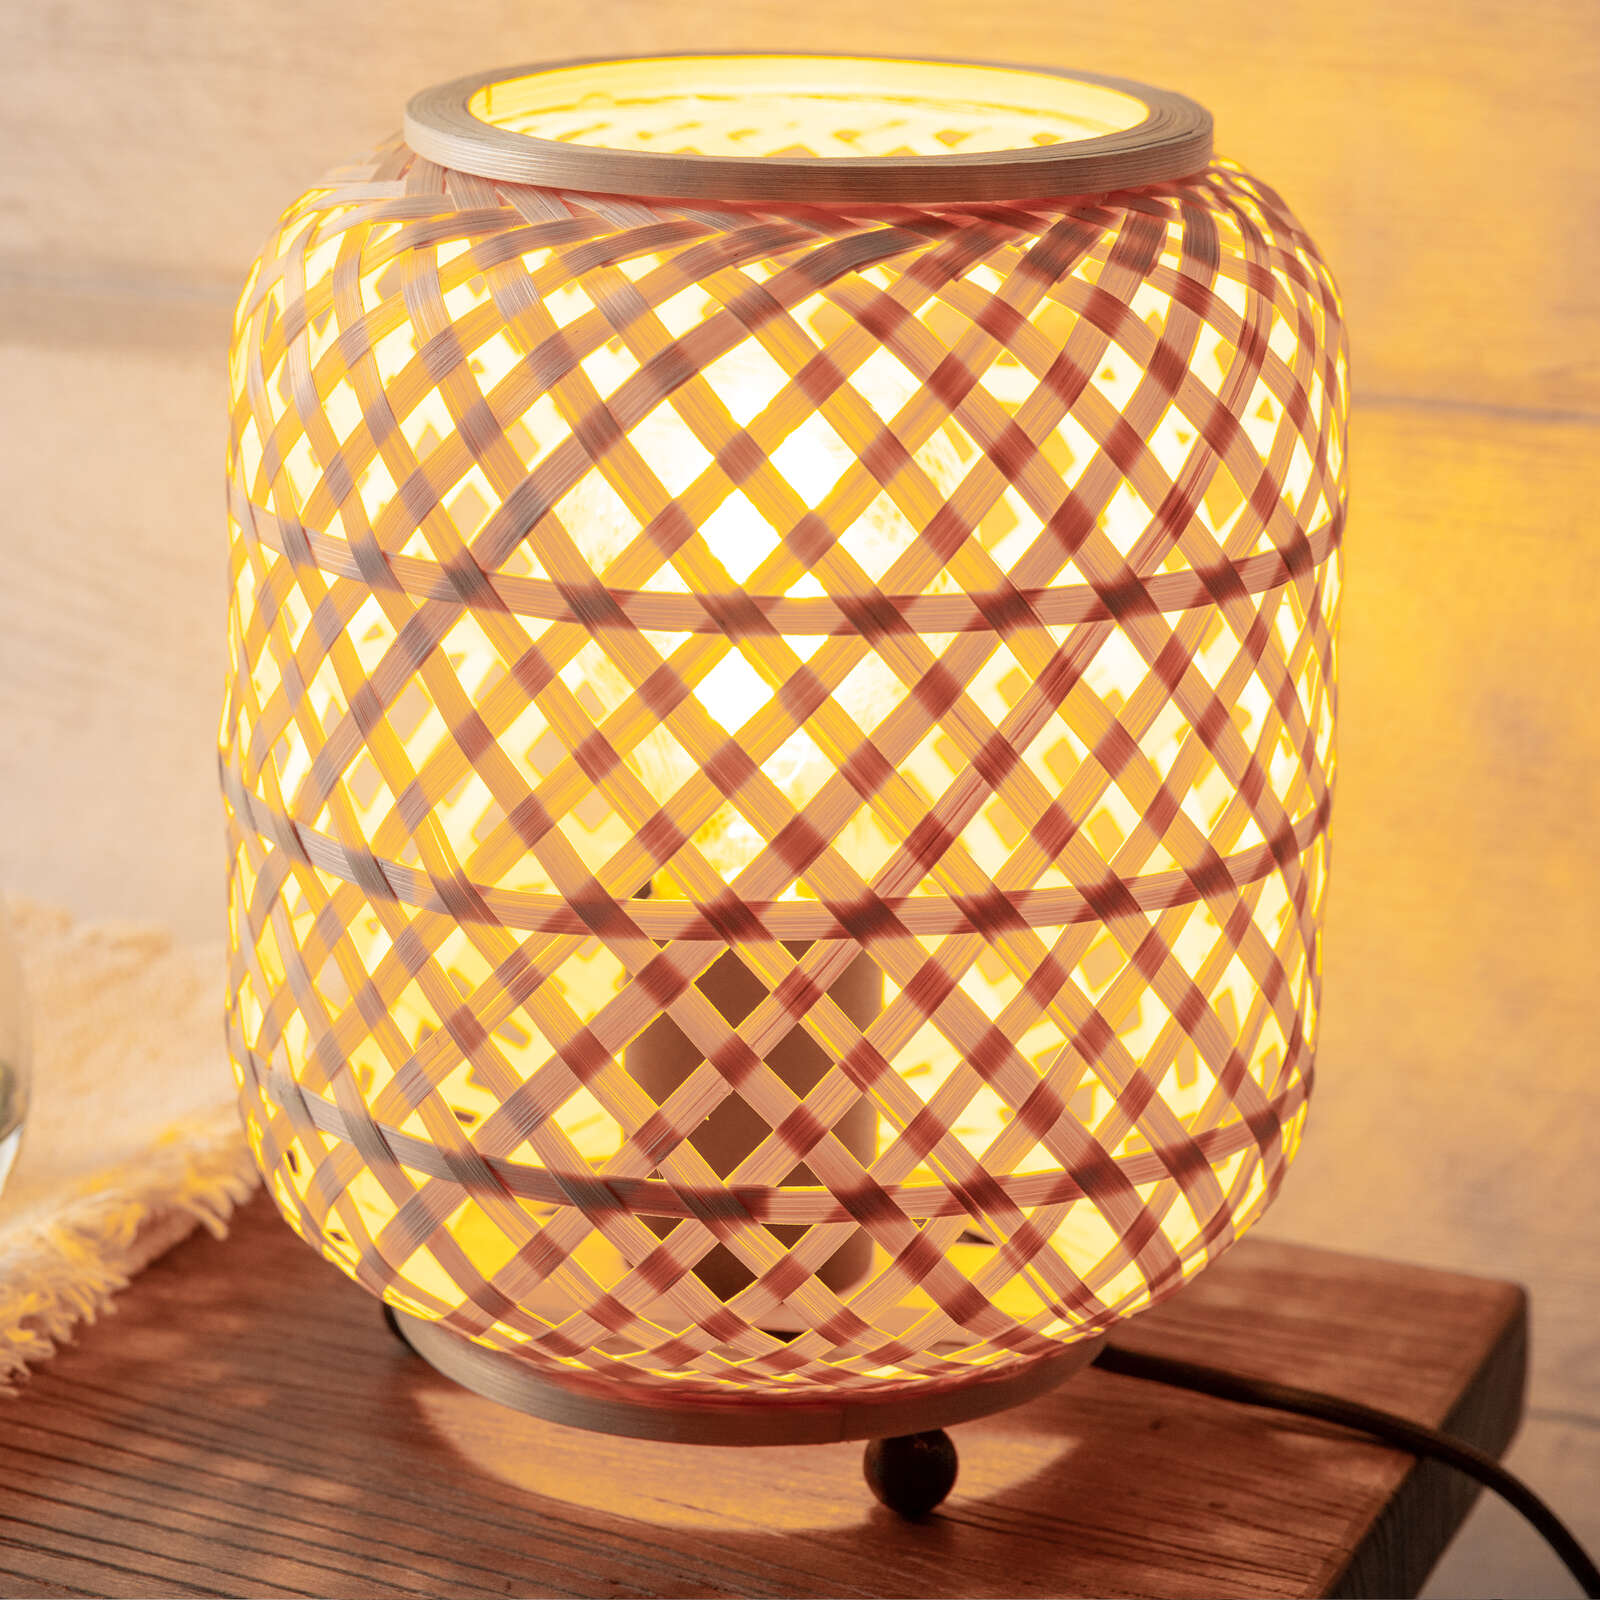             Lámpara de mesa de bambú - Lina - Marrón
        